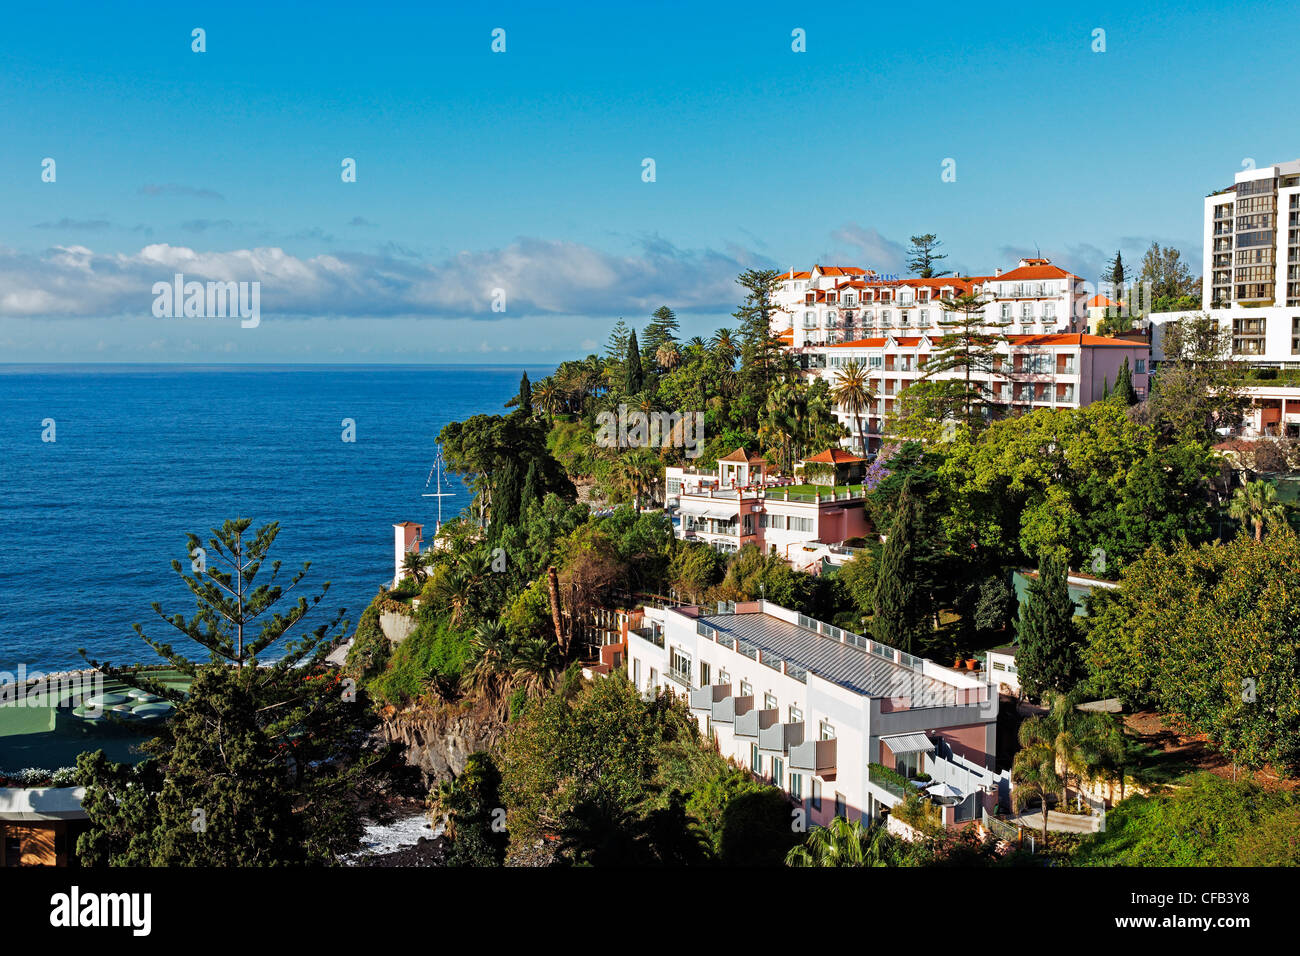 Europe, Portugal, Republica Portuguesa, Madeira, Funchal, Rua Carvalho Araujo, hotel arrangement, REIDS, tourism Stock Photo